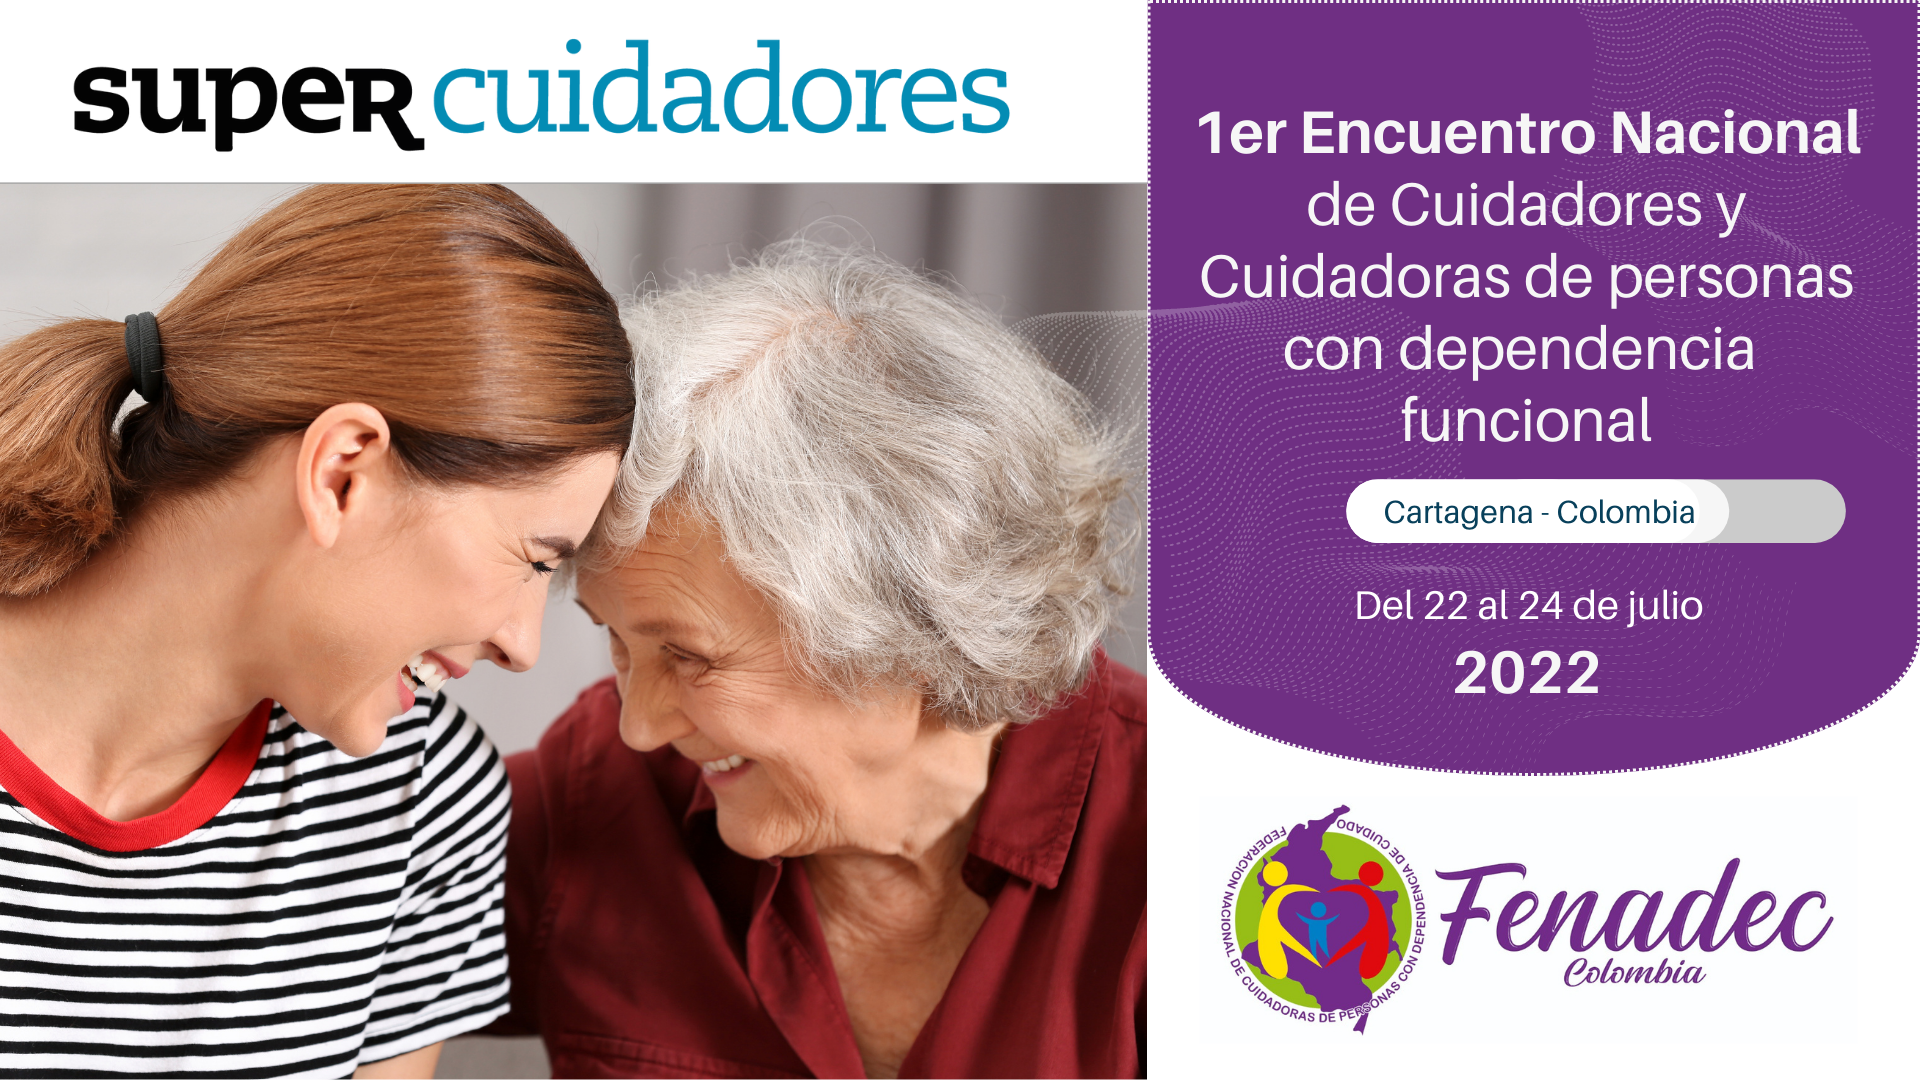 Afiche del encuentro nacional de cuidadores y cuidadoras en Cartagena